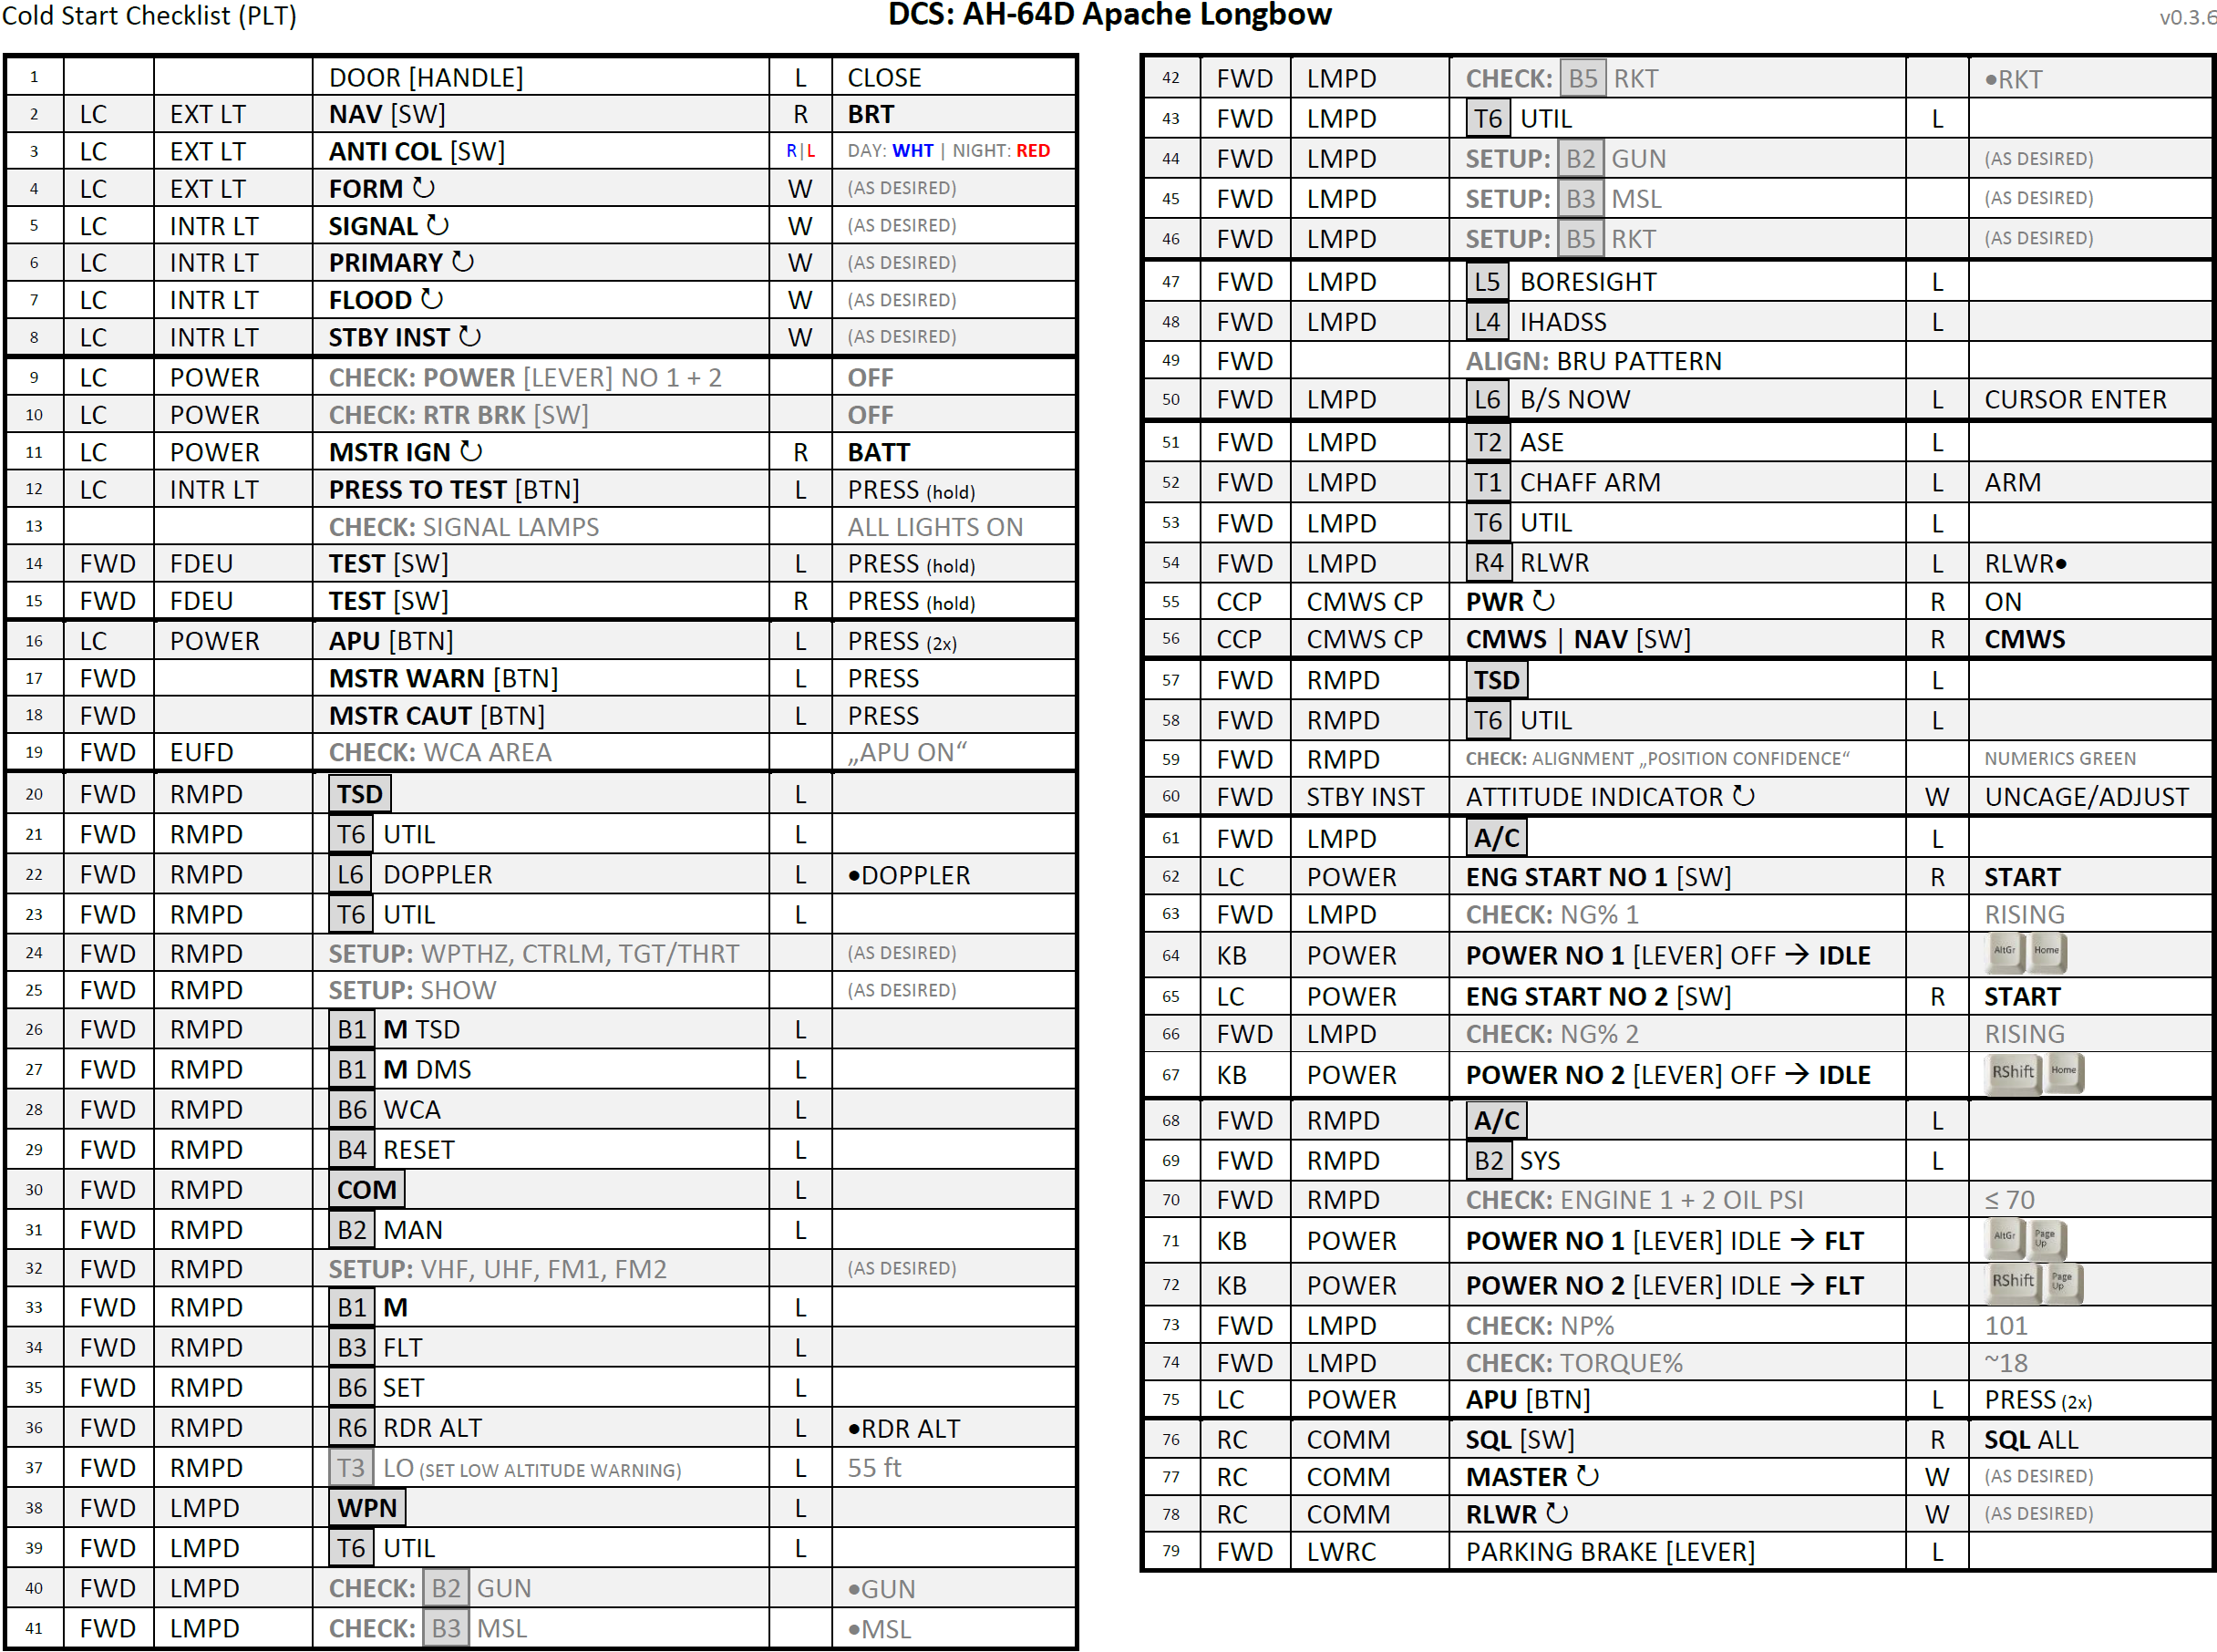 AH-64D Cold Start Checklist v0.5.0 (29.04.2022)